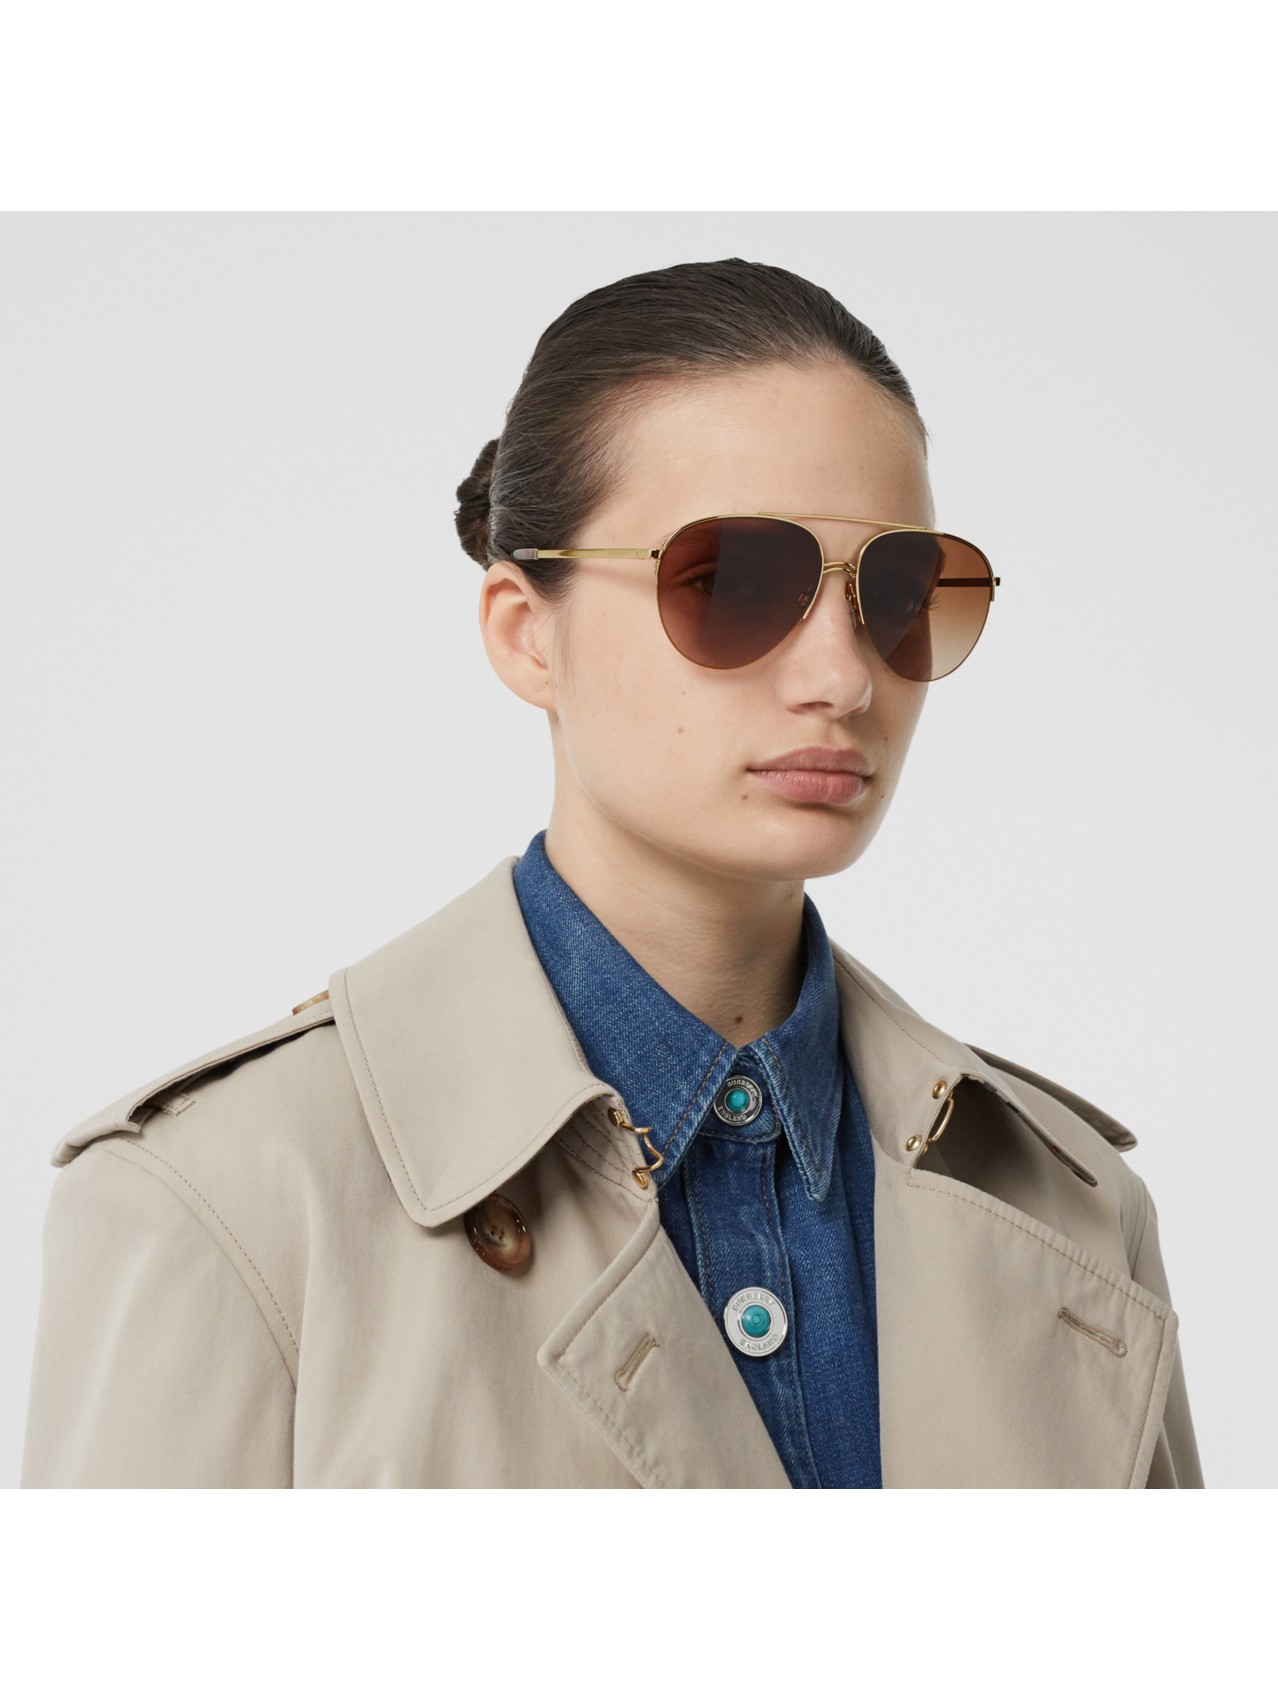 Women’s Designer Eyewear | Opticals & Sunglasses | Burberry® Official